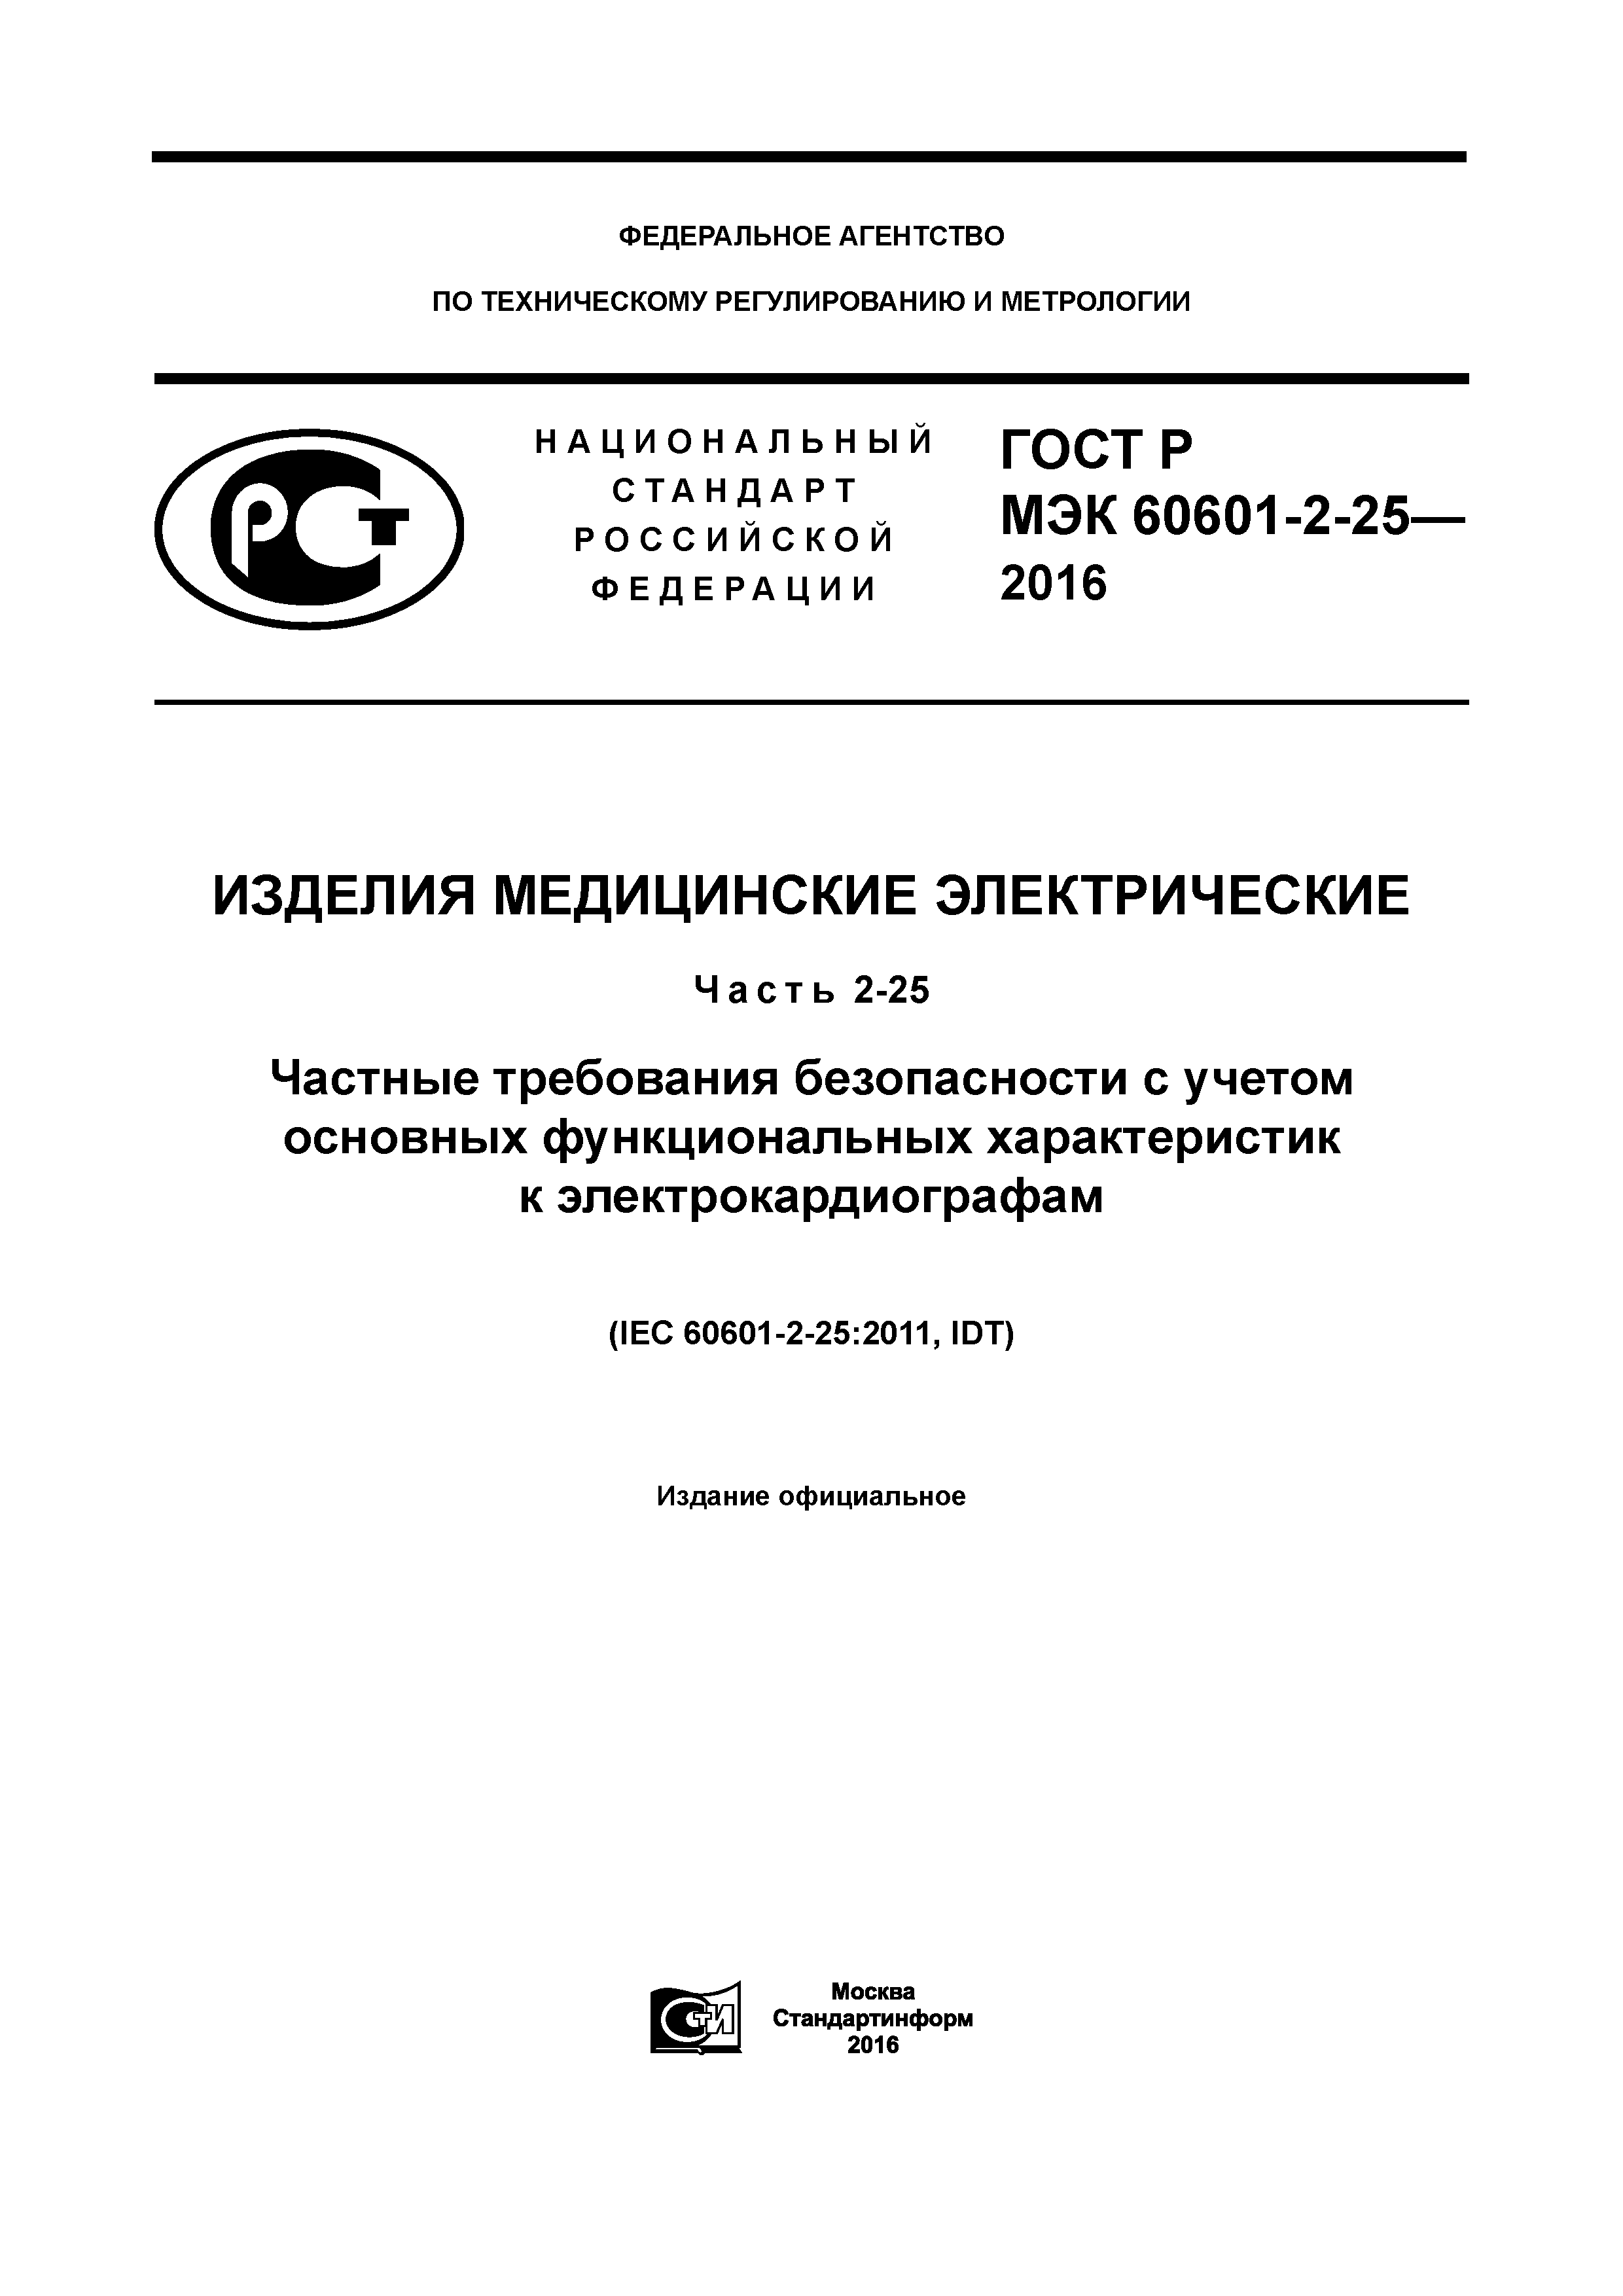 ГОСТ Р МЭК 60601-2-25-2016